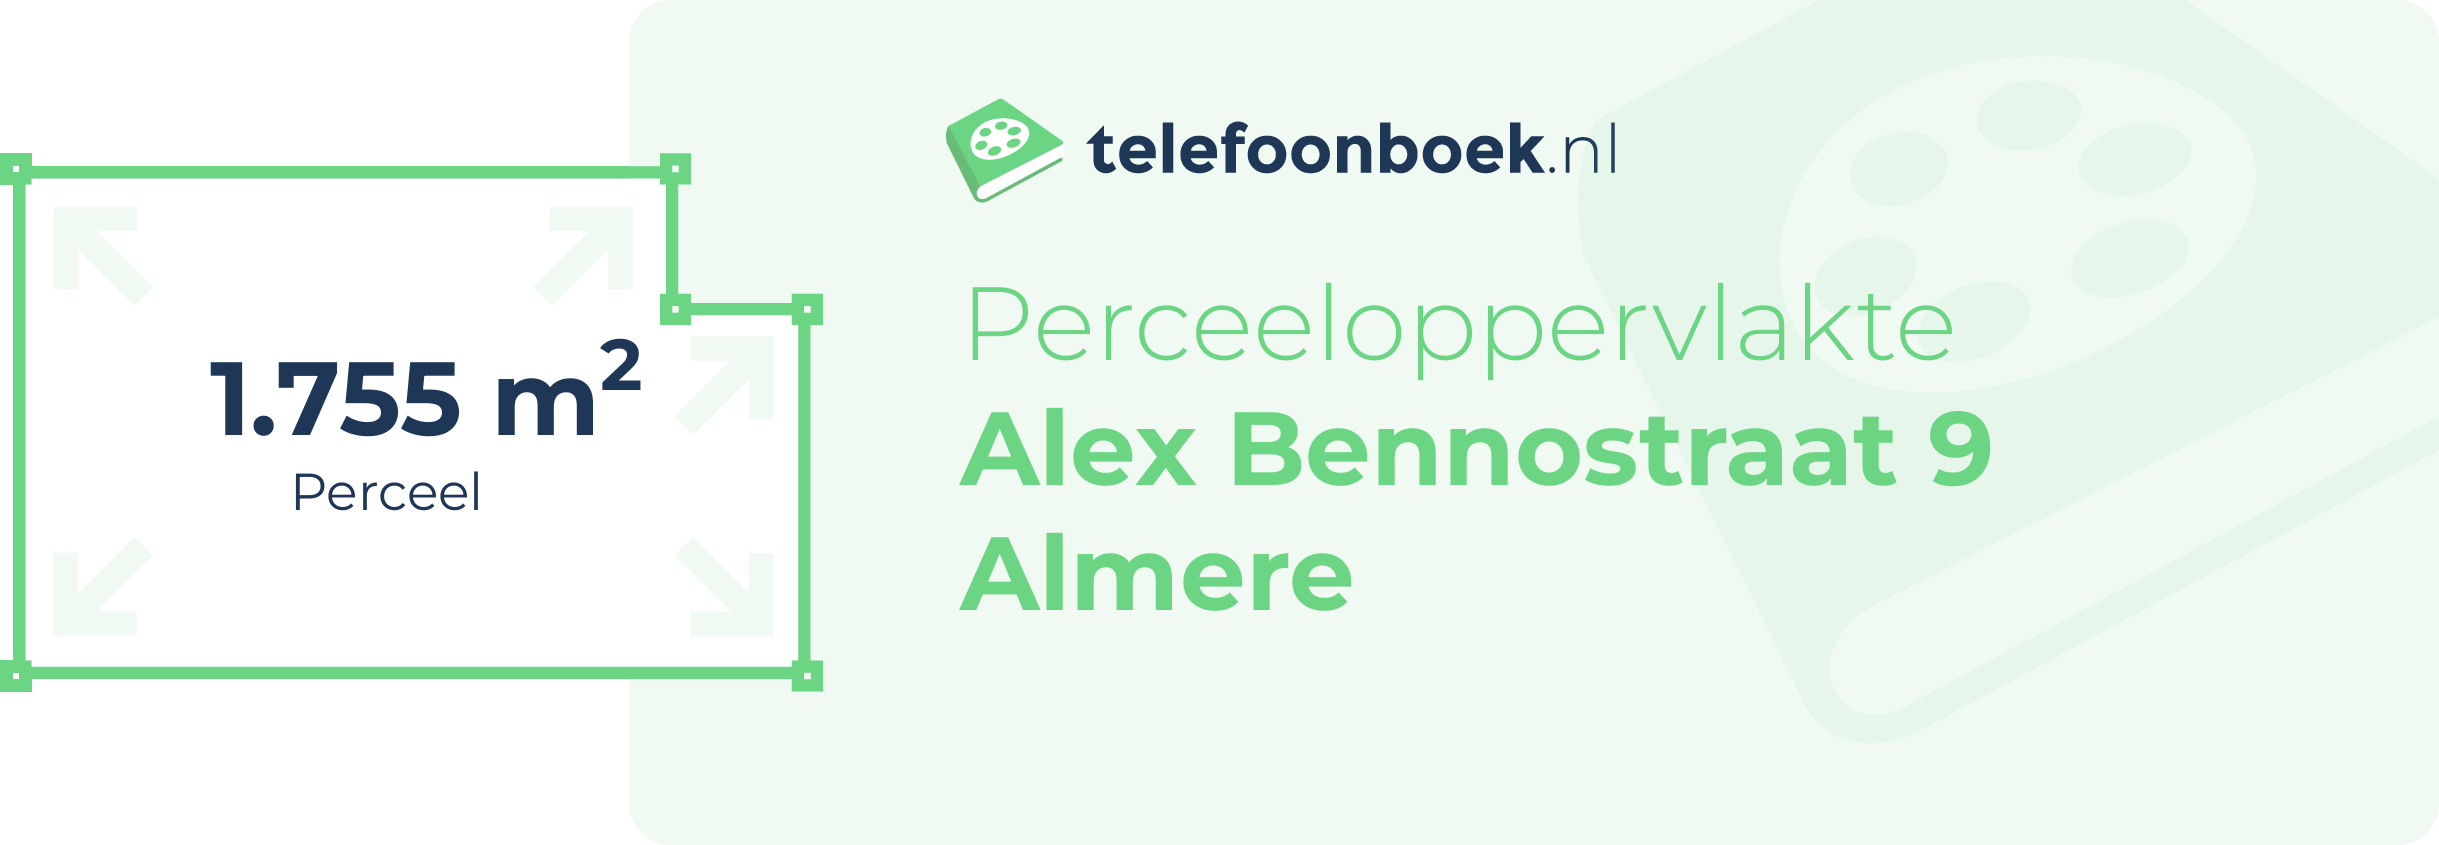 Perceeloppervlakte Alex Bennostraat 9 Almere